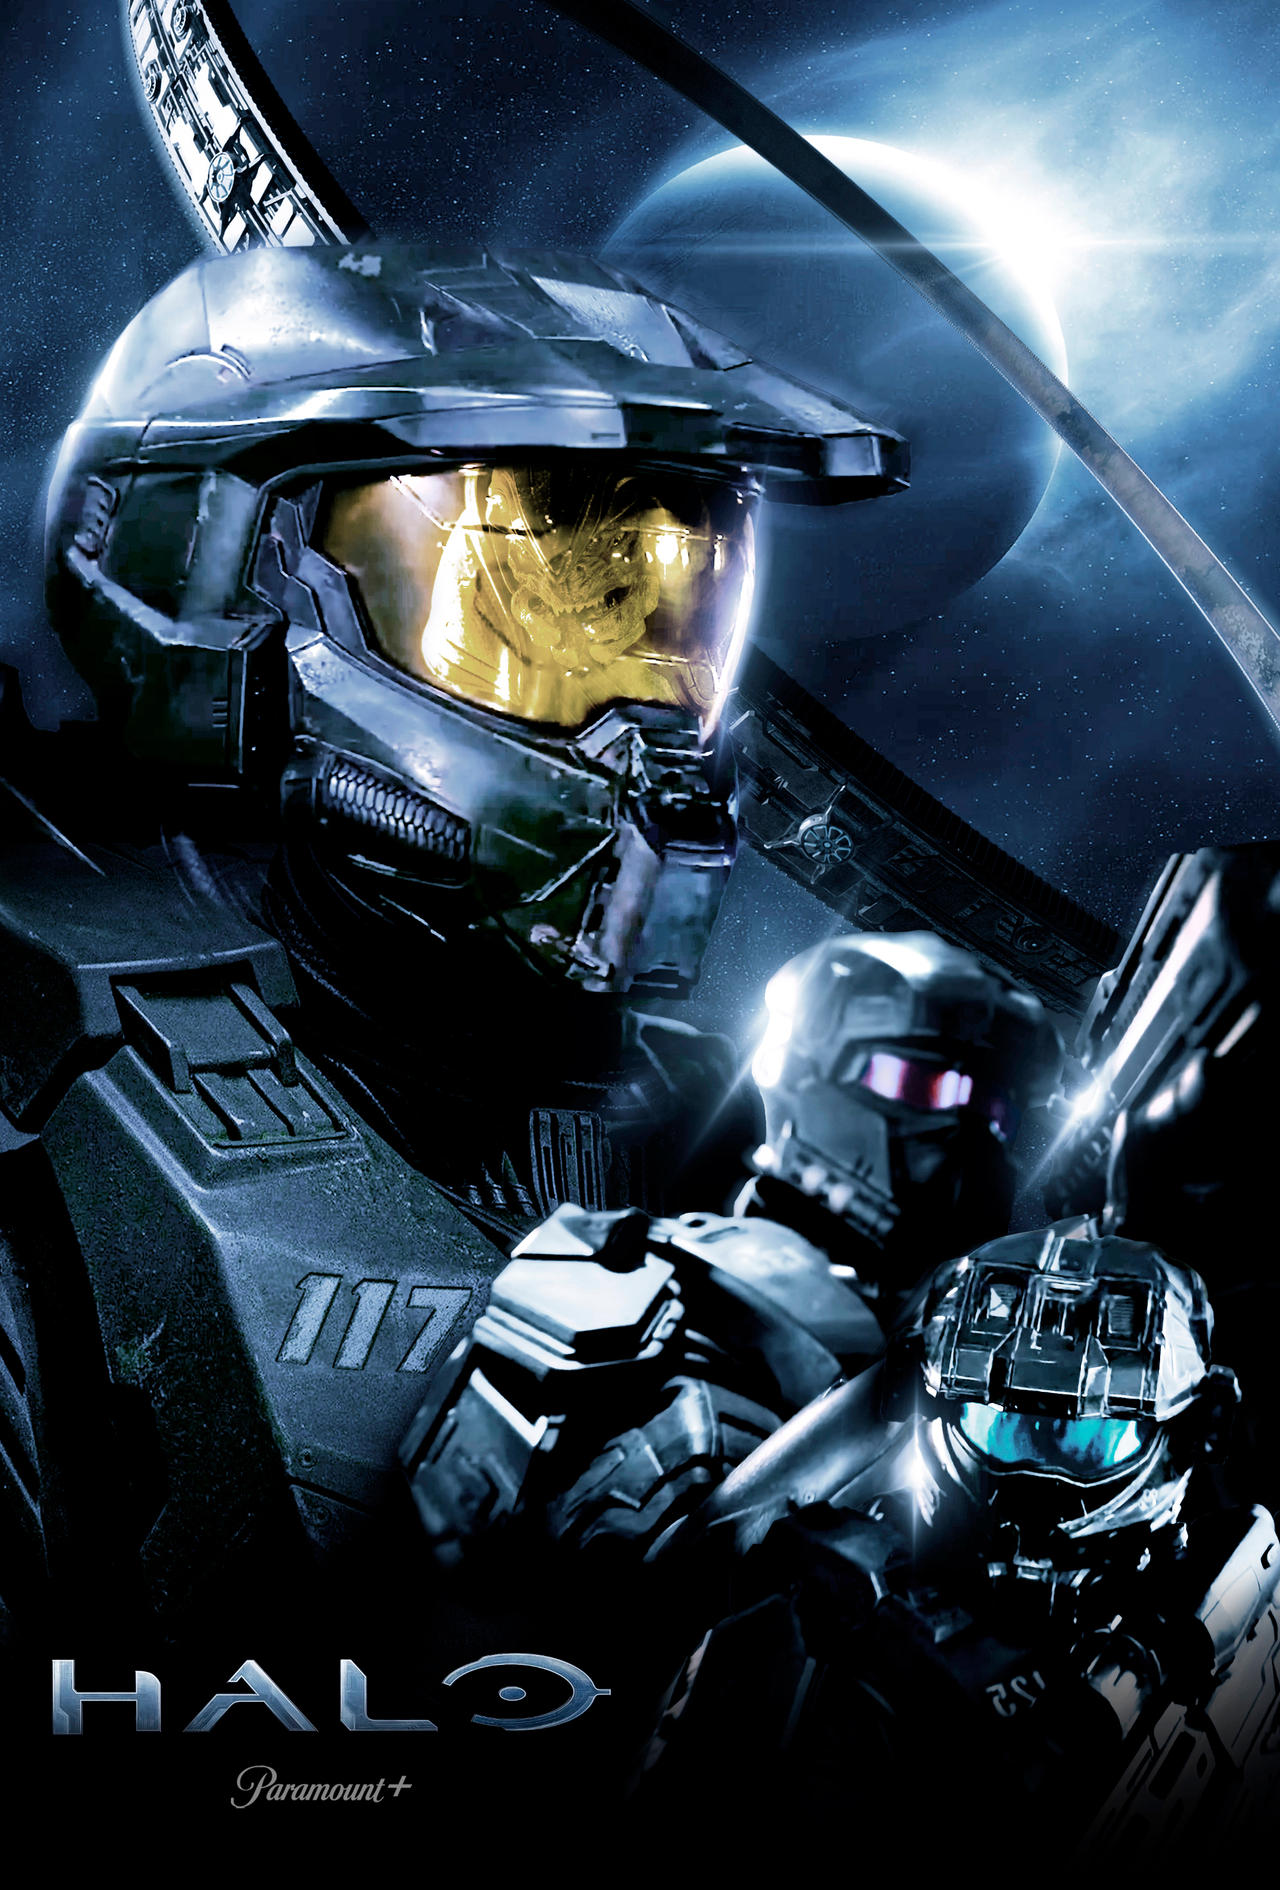 Halo: Série do Paramount+ terá painel na CCXP23